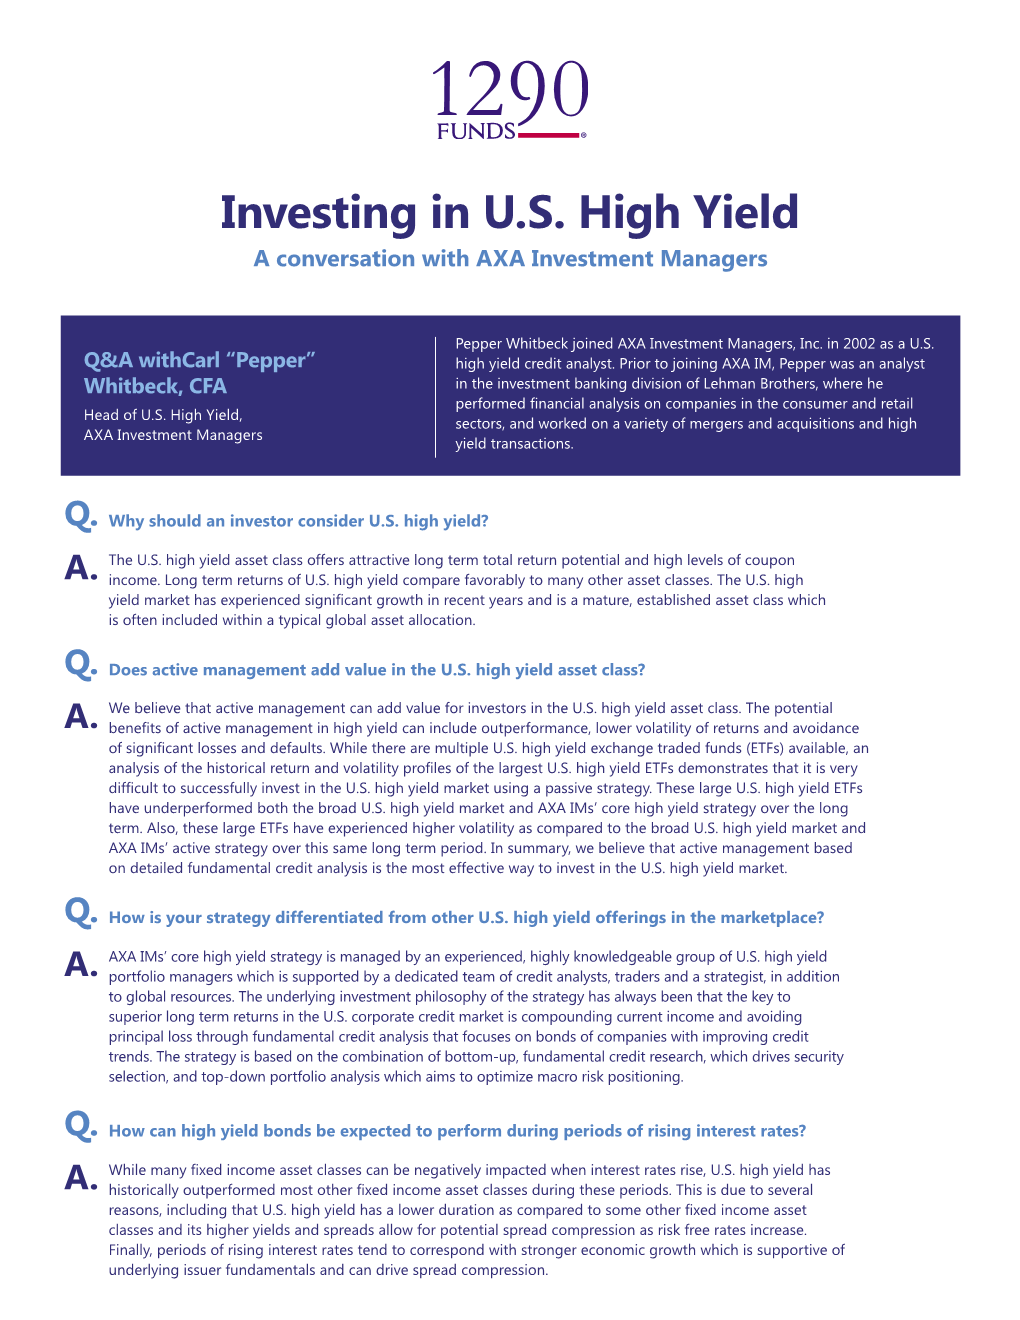 High Yield Bond Q&A